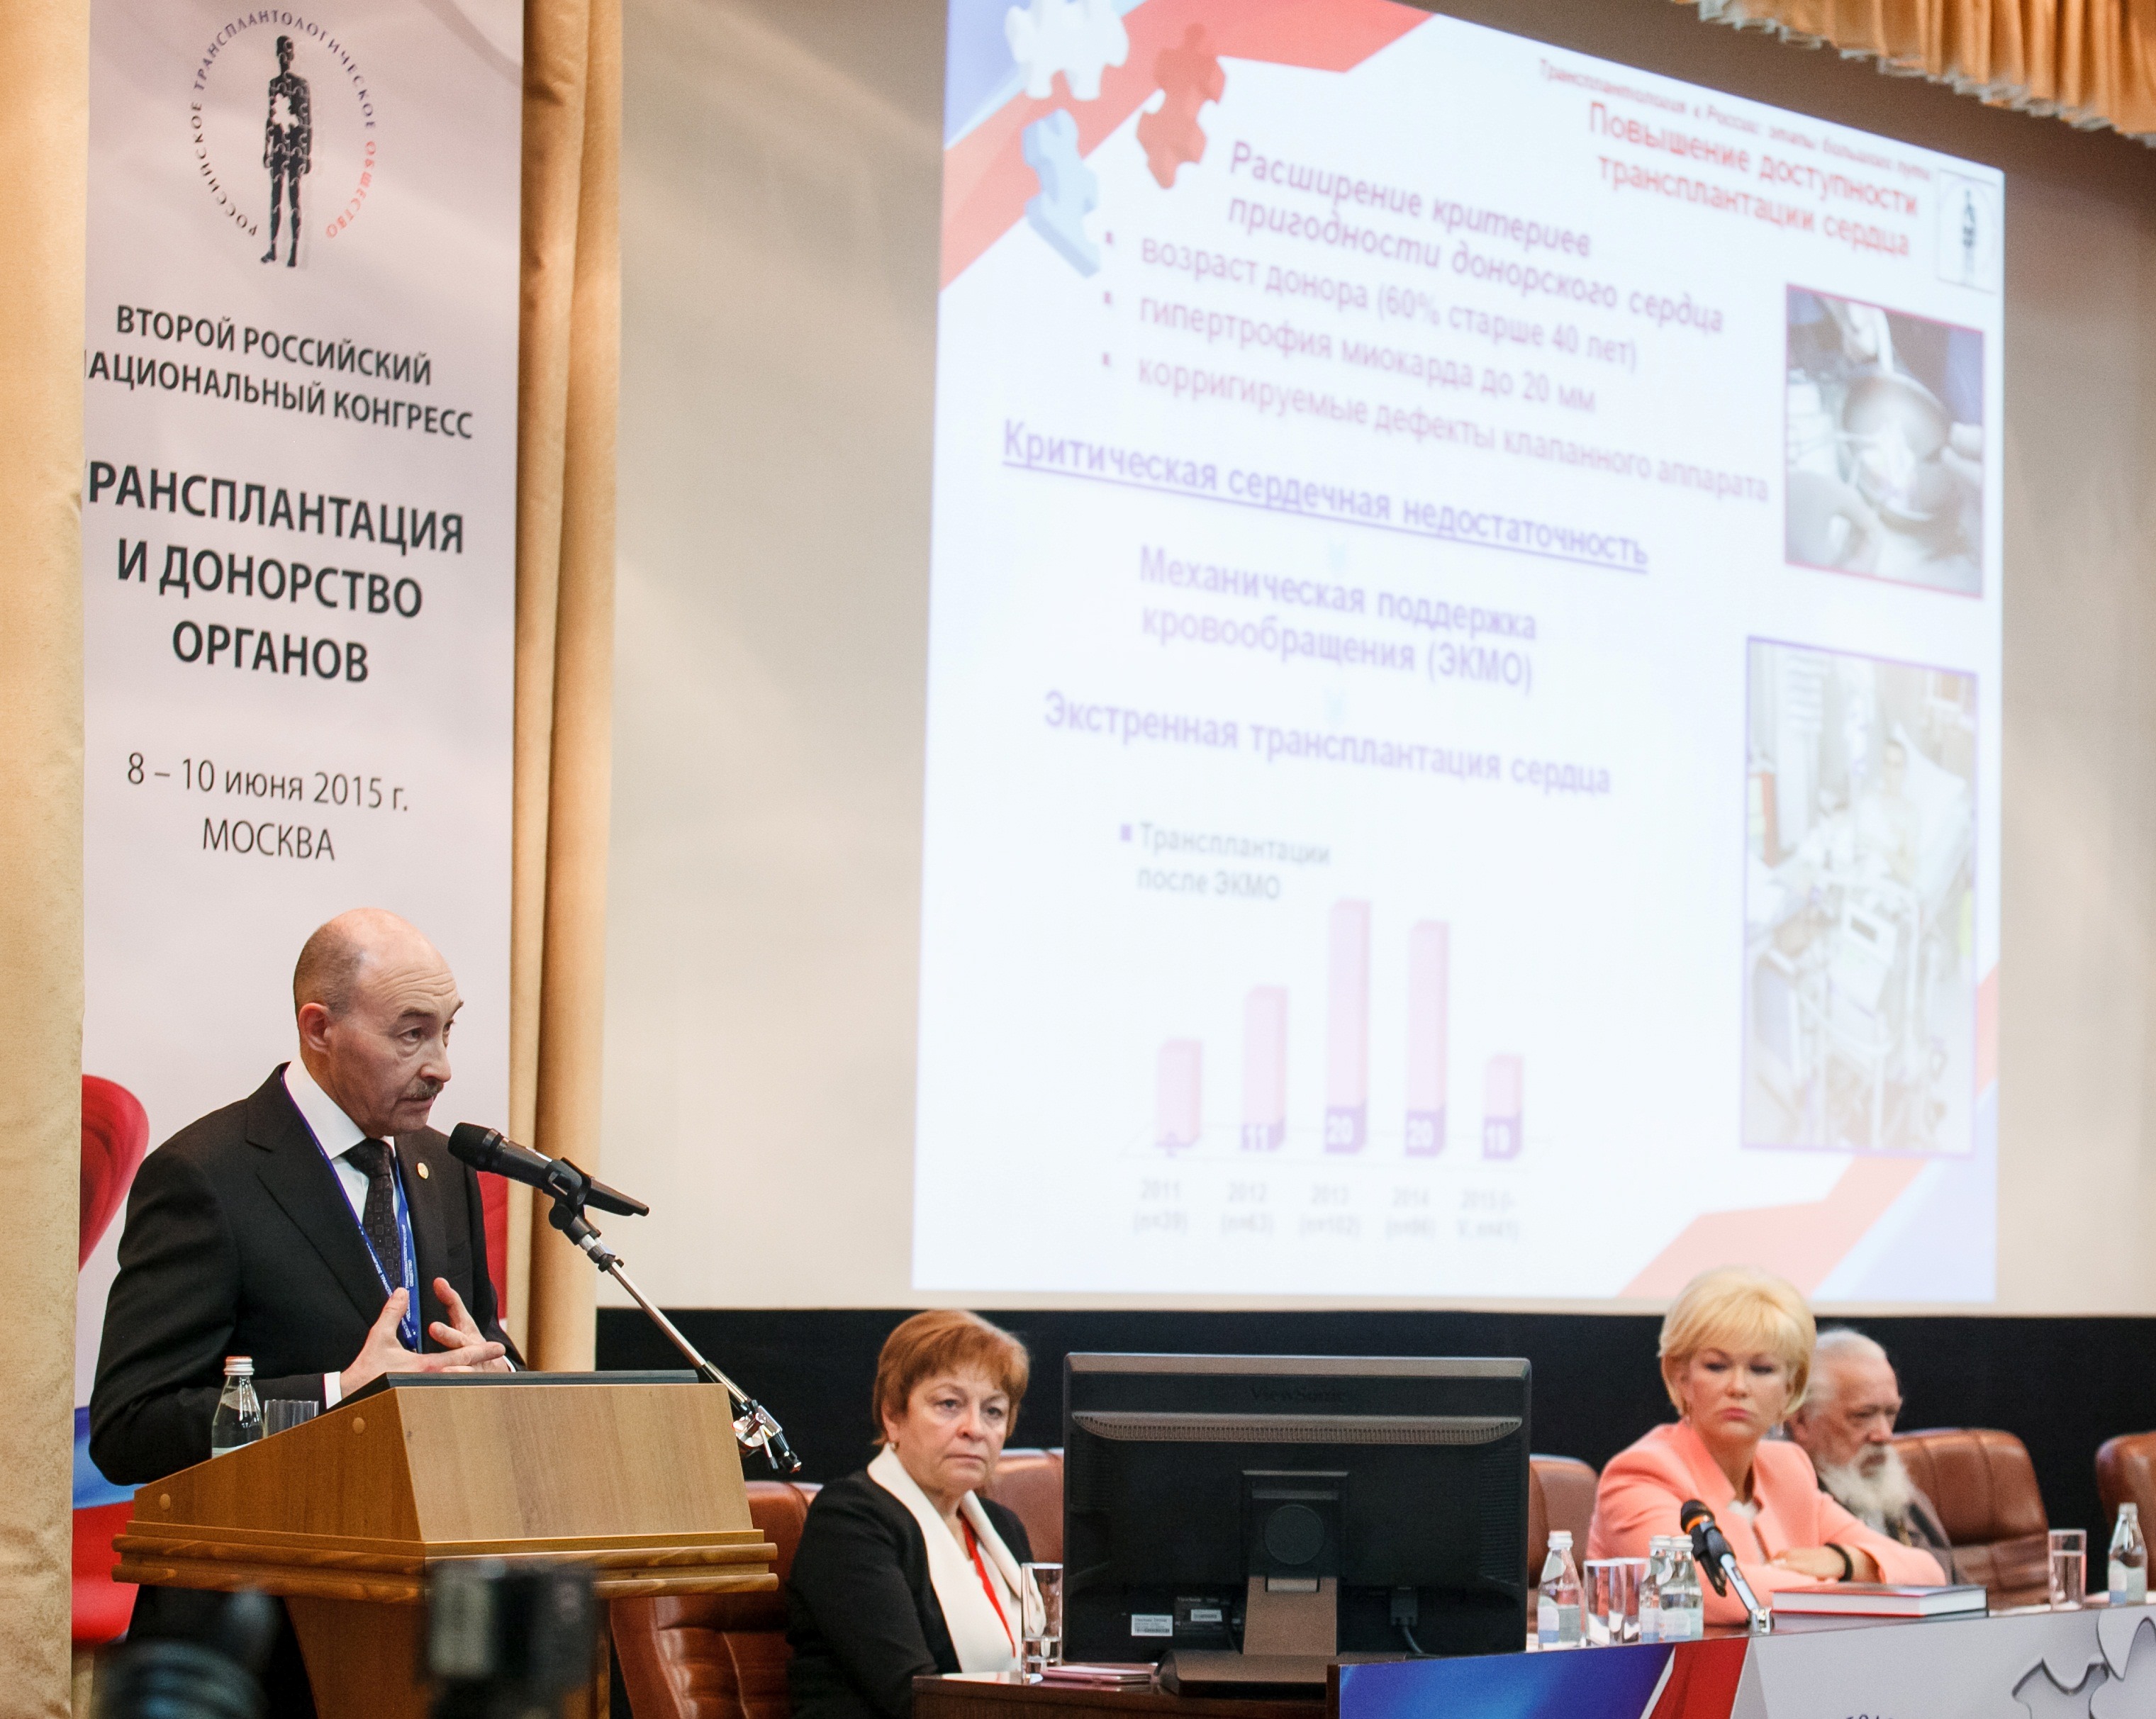 Второй российский национальный конгресс  «Трансплантация и донорство органов»